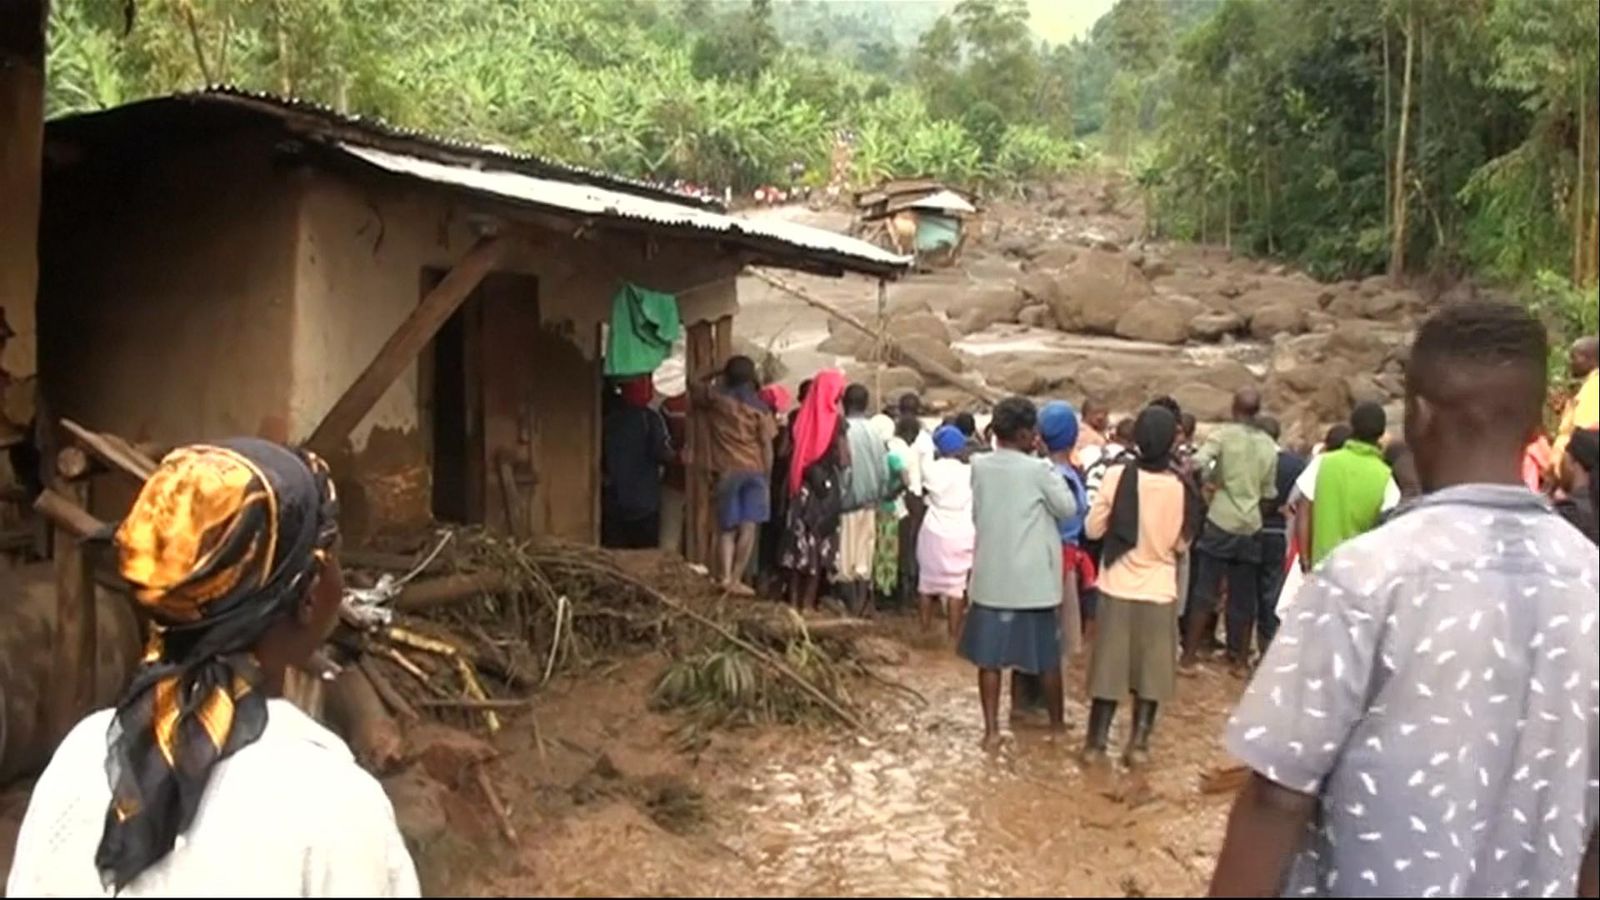 At least 34 people dead after landslide in eastern Uganda | World News ...